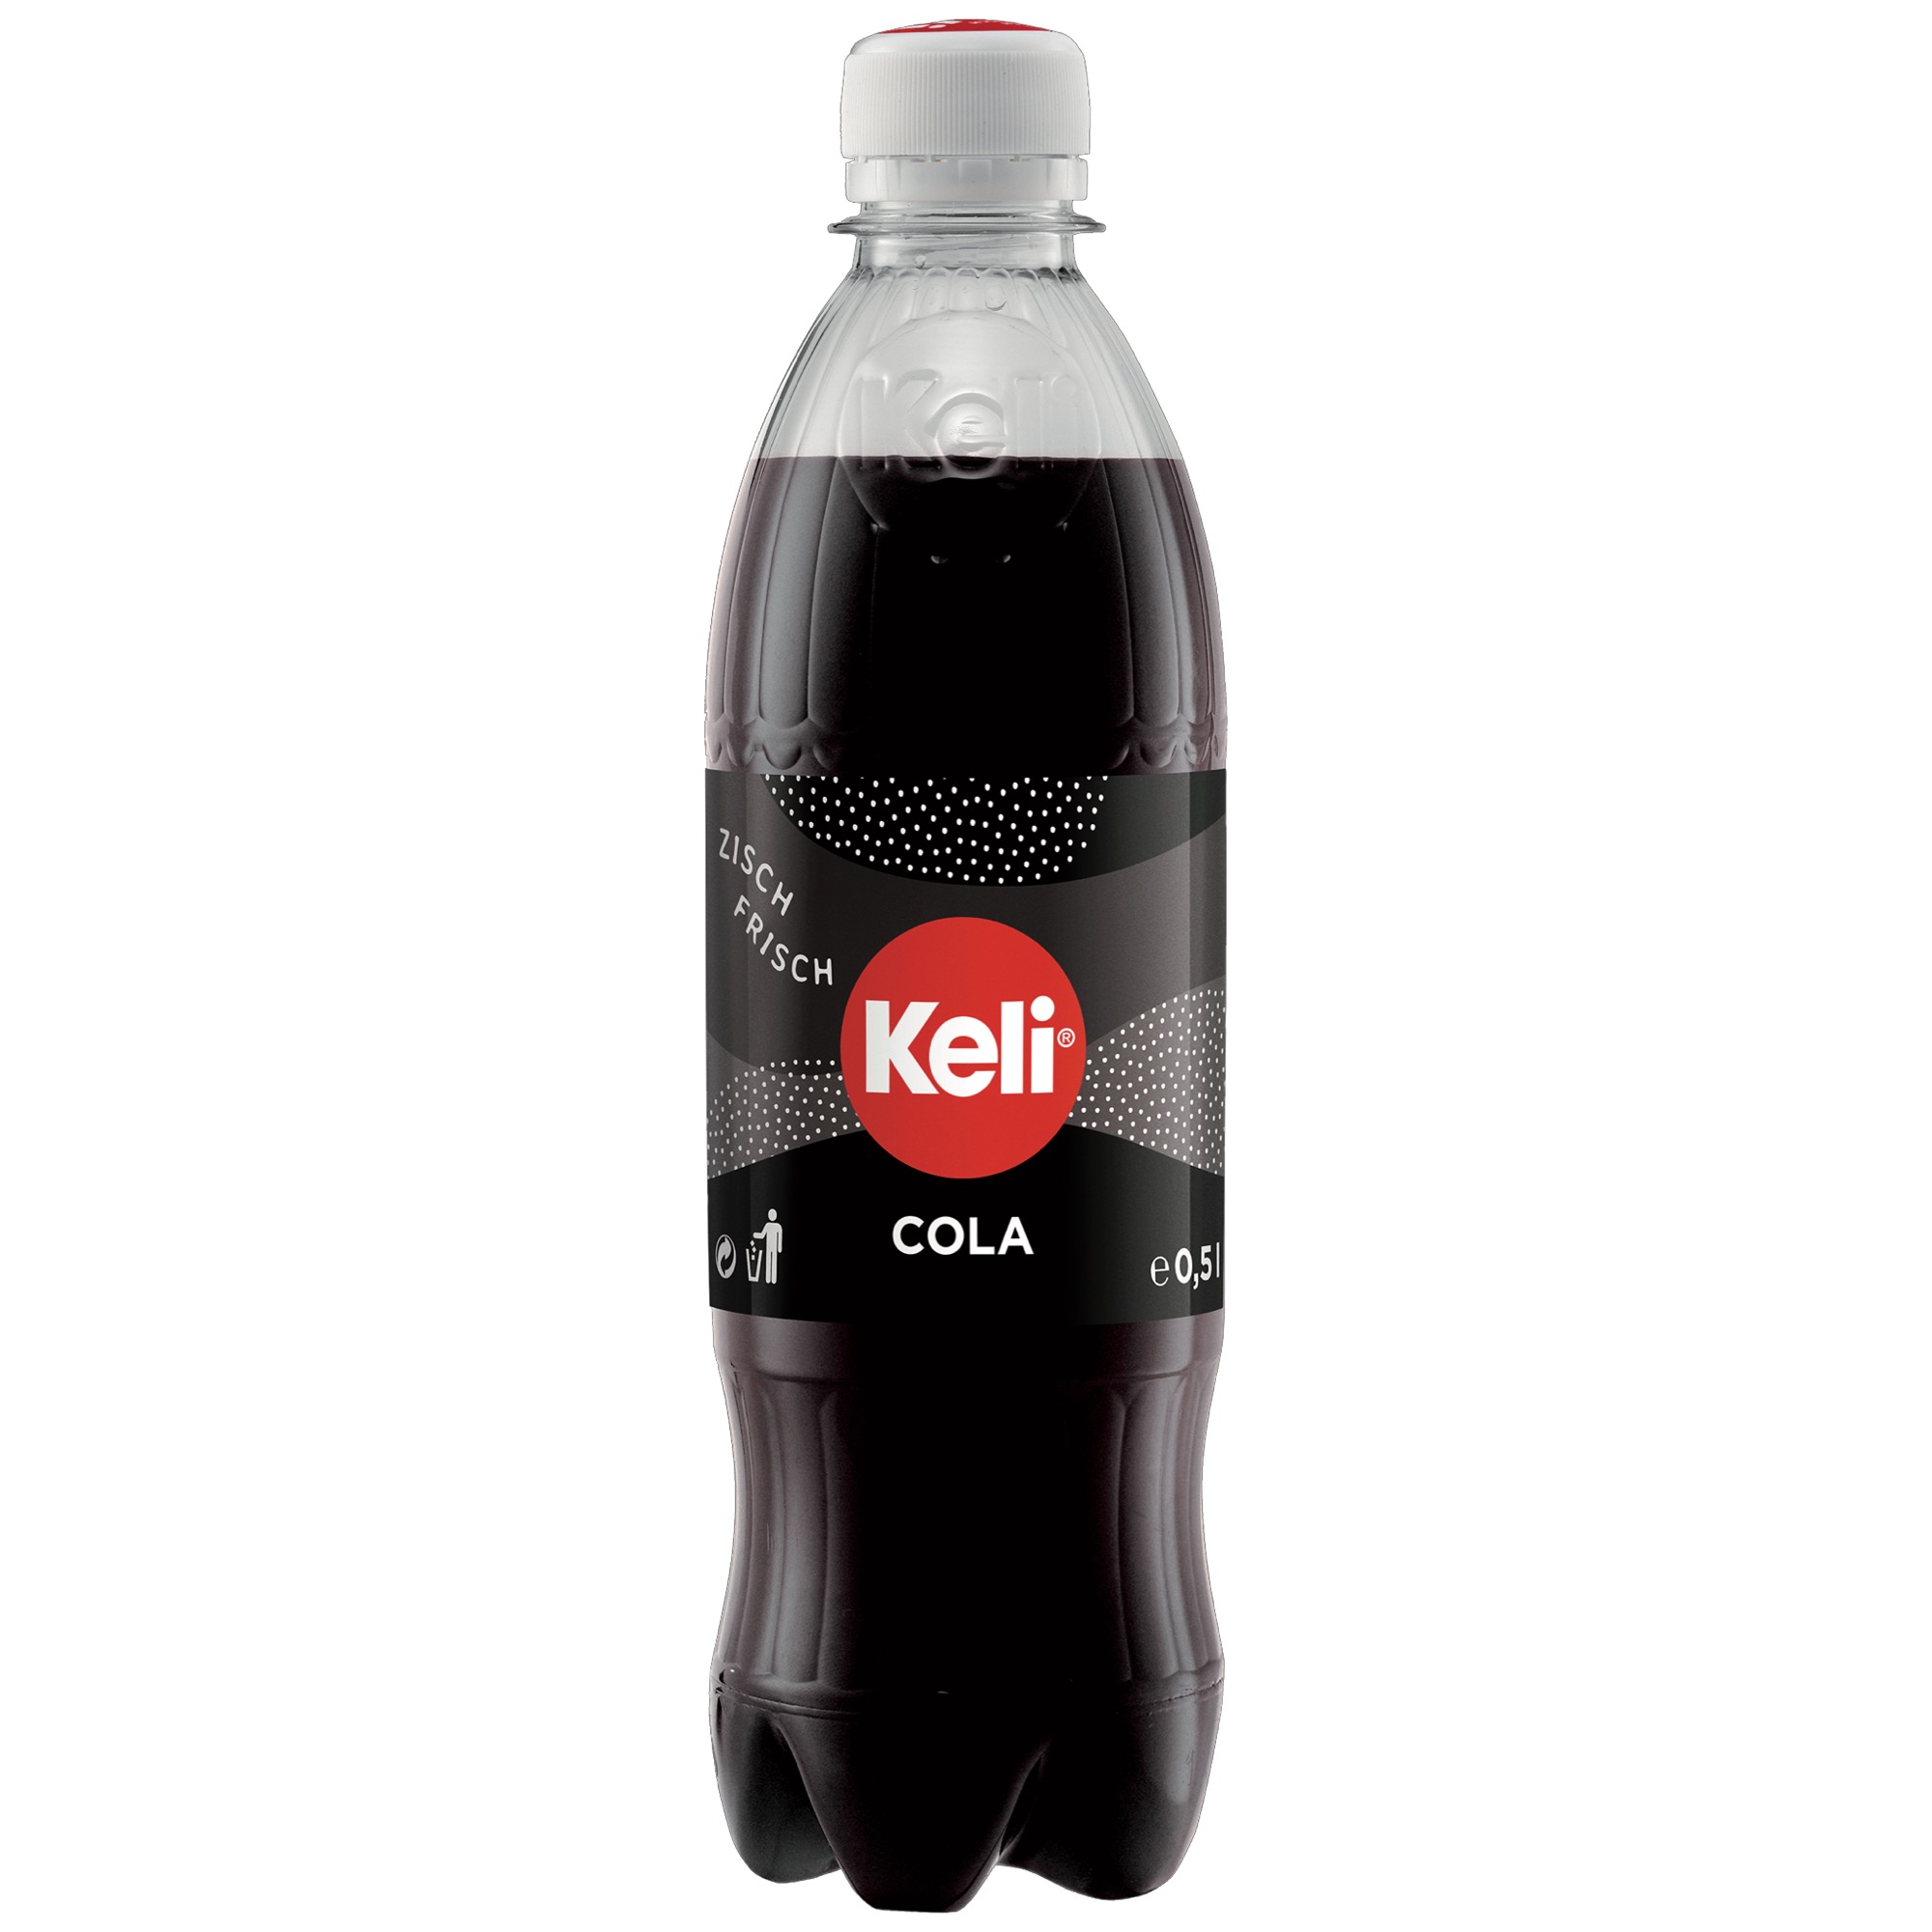 KELI PET 0,5l Cola